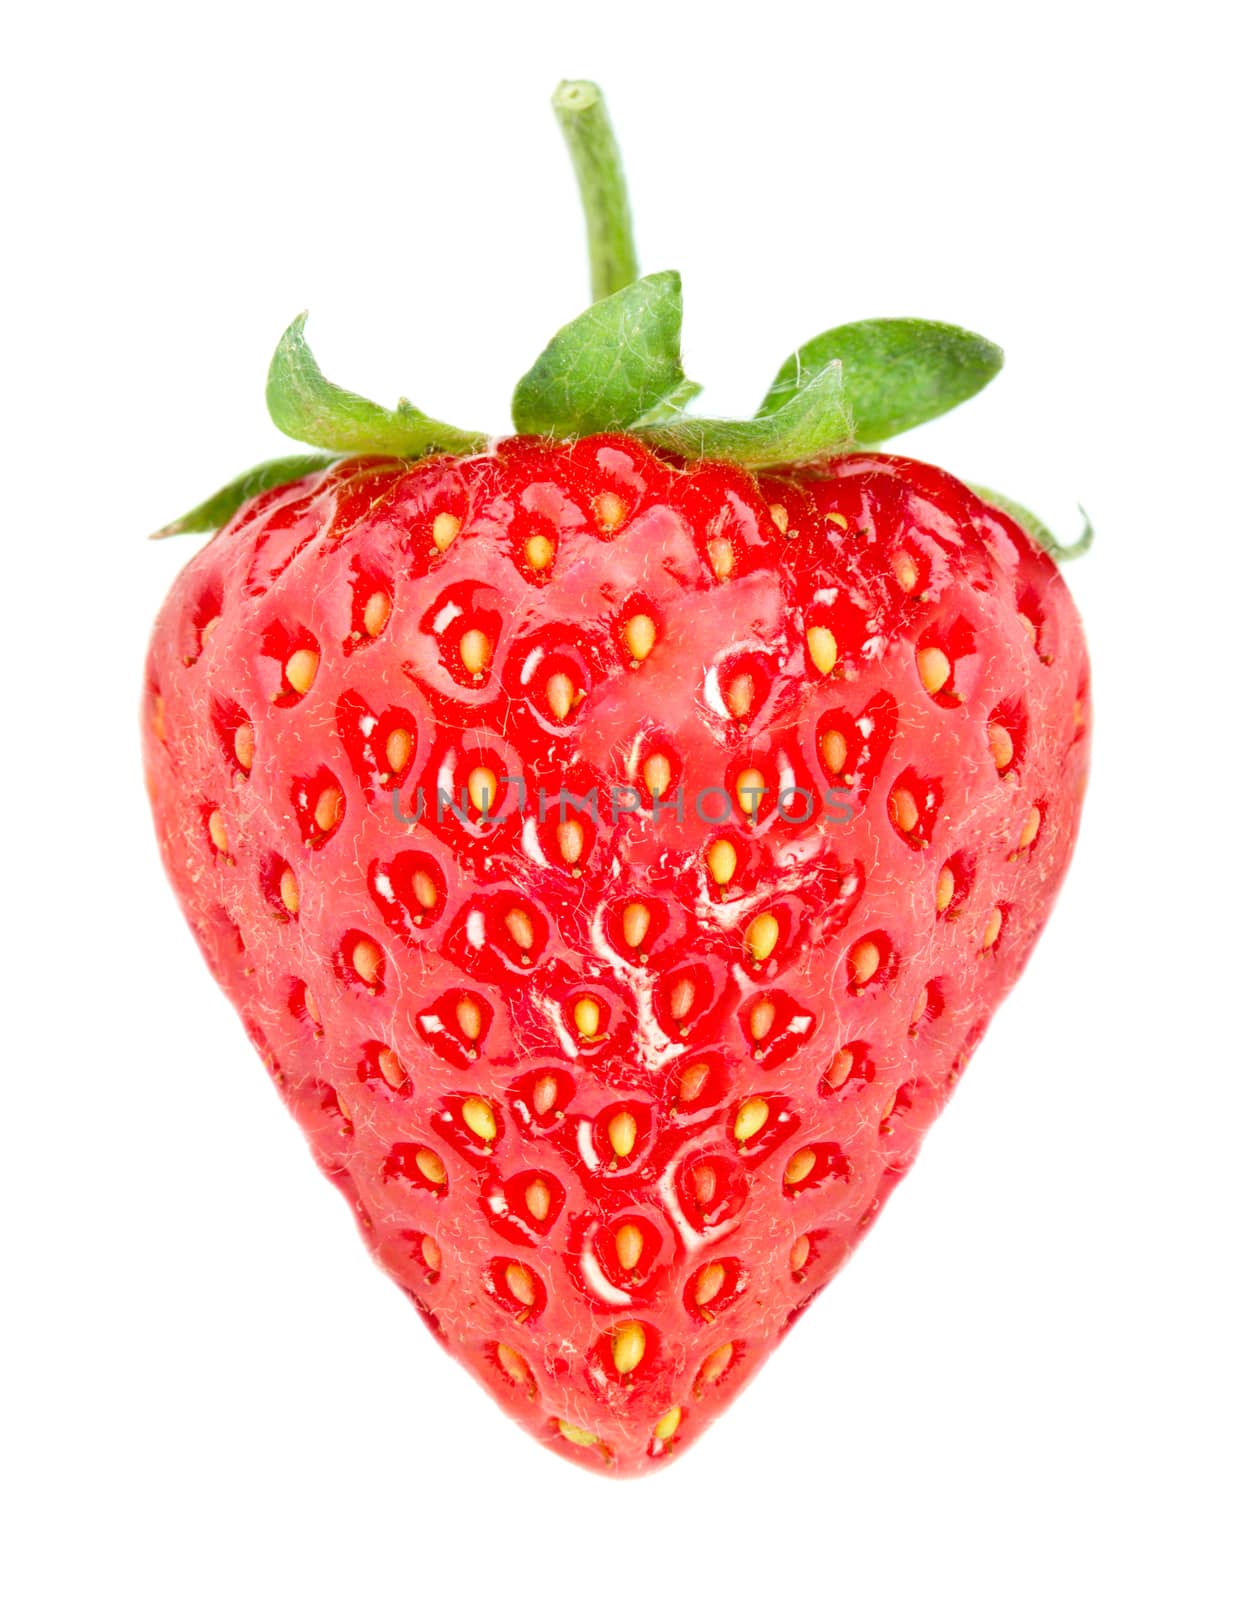 Strawberry by Valengilda